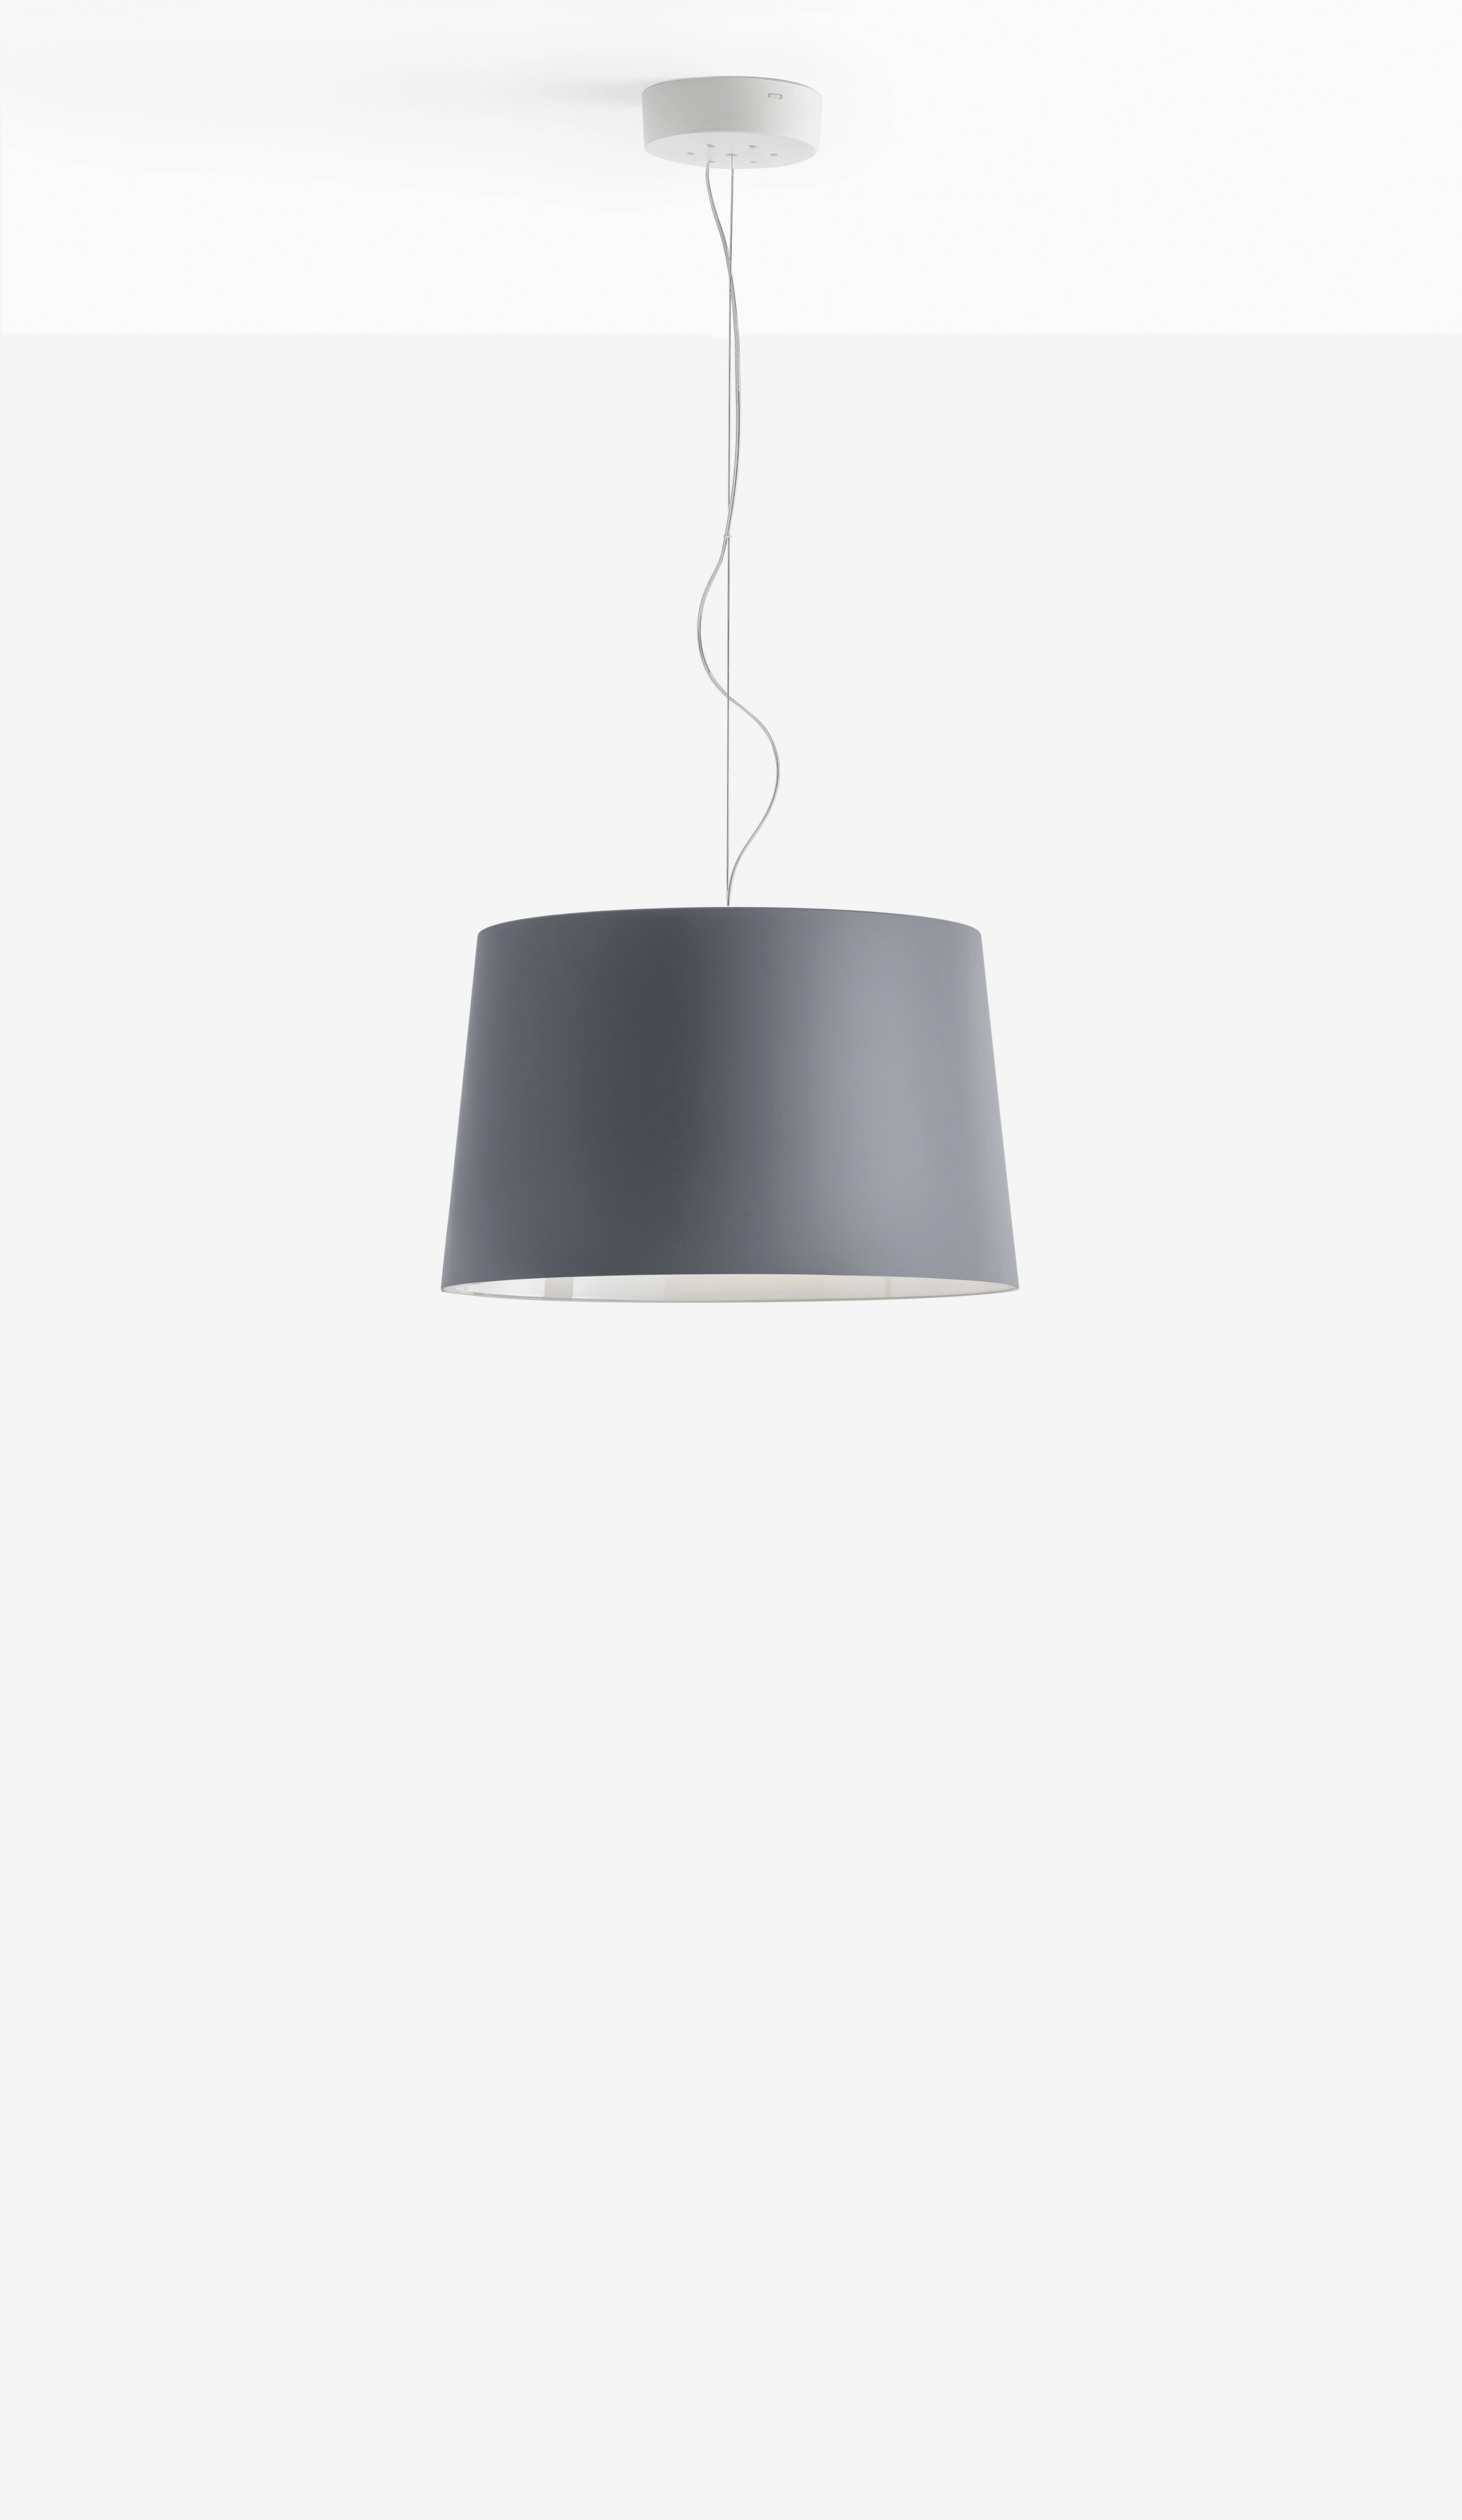 Hängelampe L001S/B SOFT - Design Lampe von Pedrali Soft-touch BE - beige schwarz 1,8 Meter